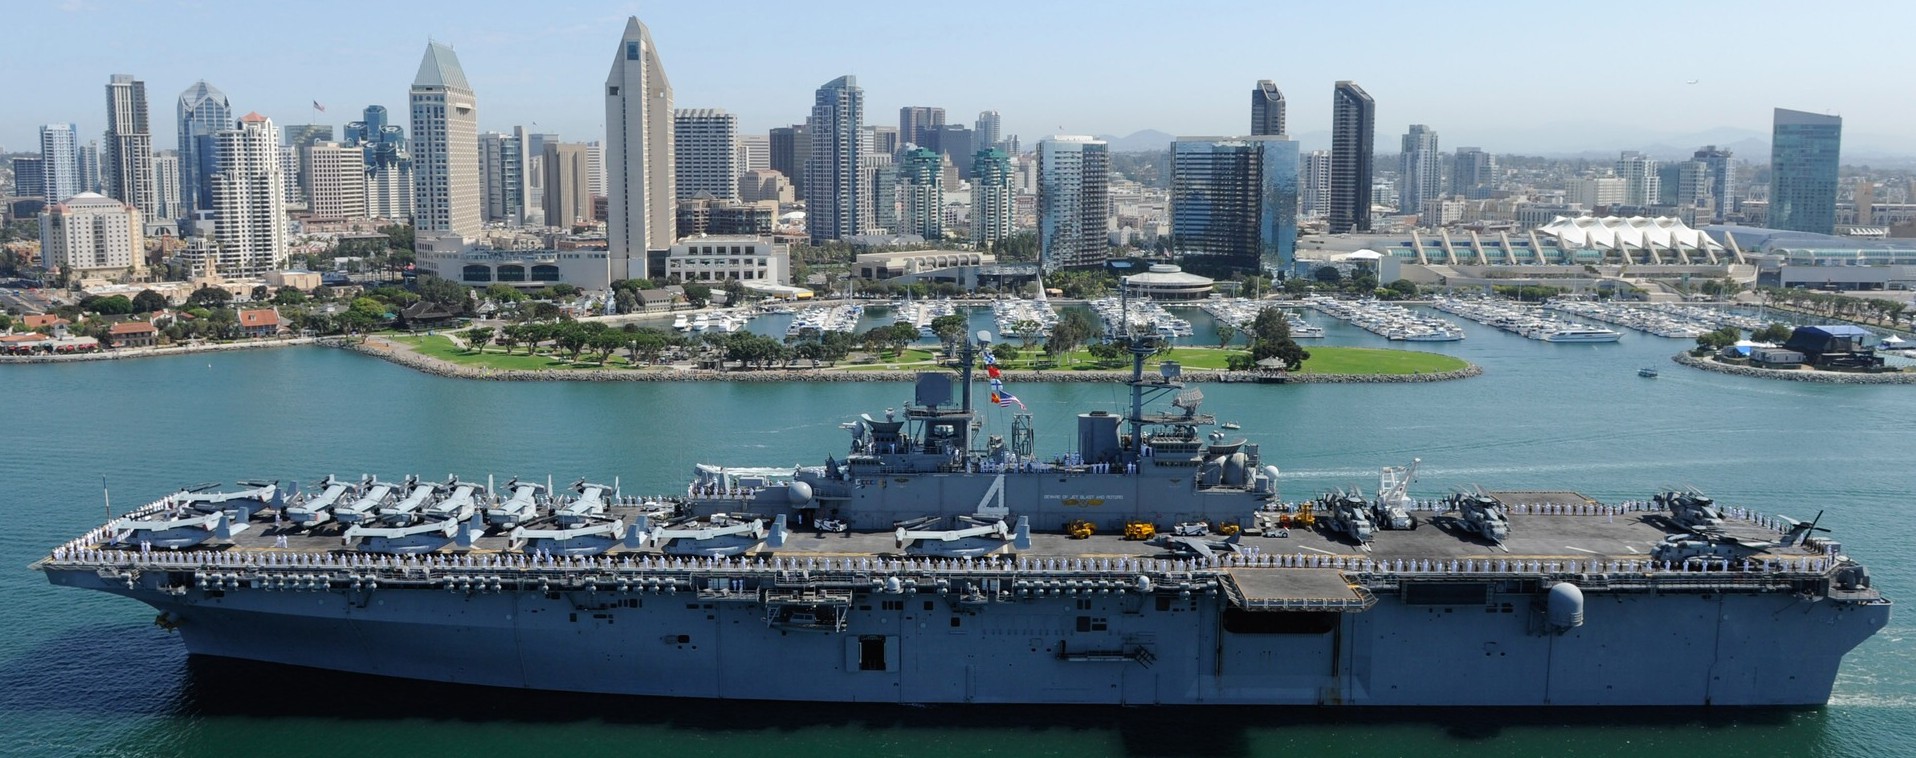 lhd-4 uss boxer wasp class amphibious assault ship dock landing us navy marines vmm-166 san diego california 82